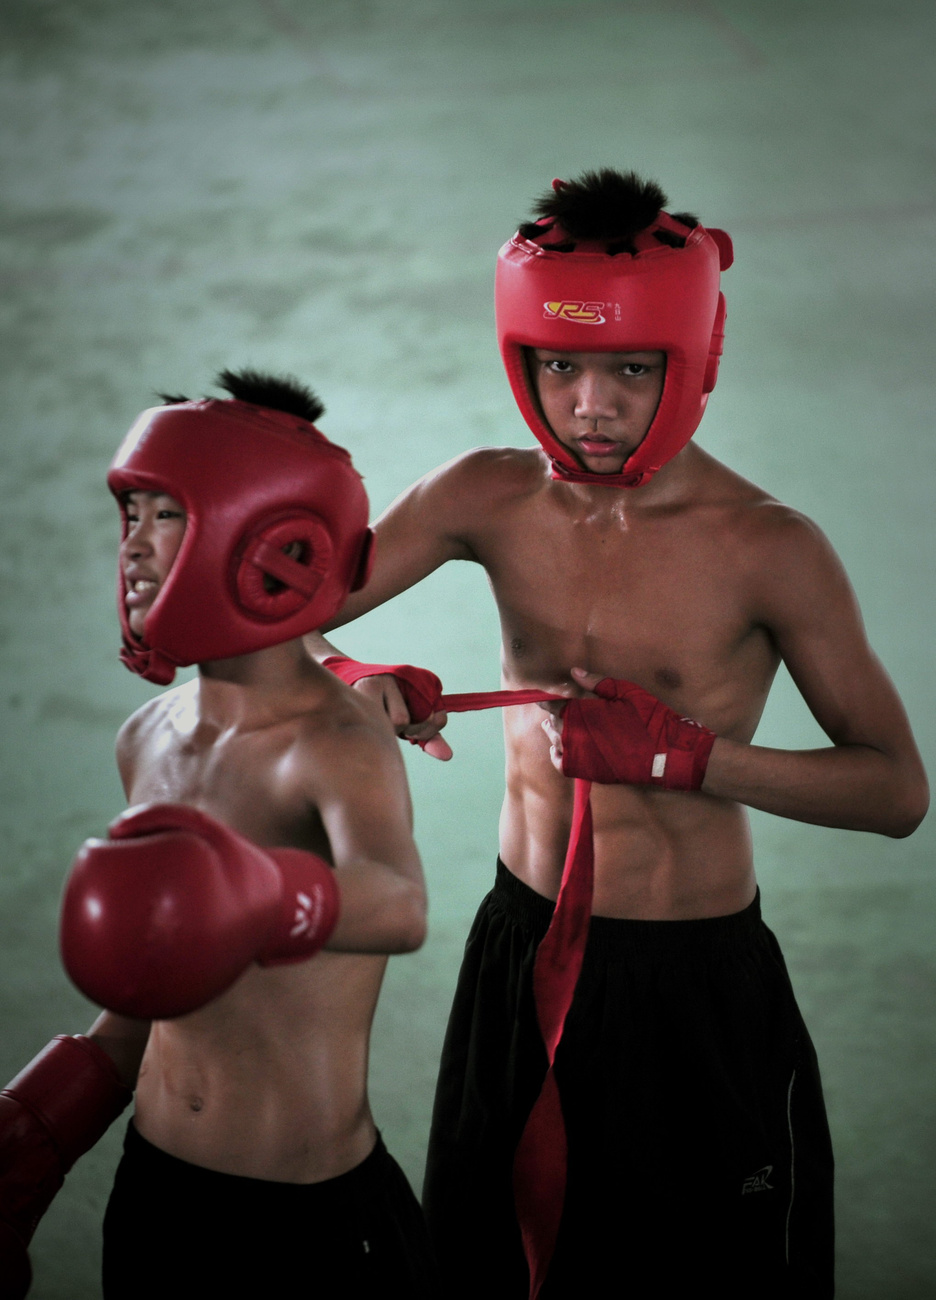 9-16 éves kínai fiúk boxedzése Fucsou-se városban, Fucsien tartományban